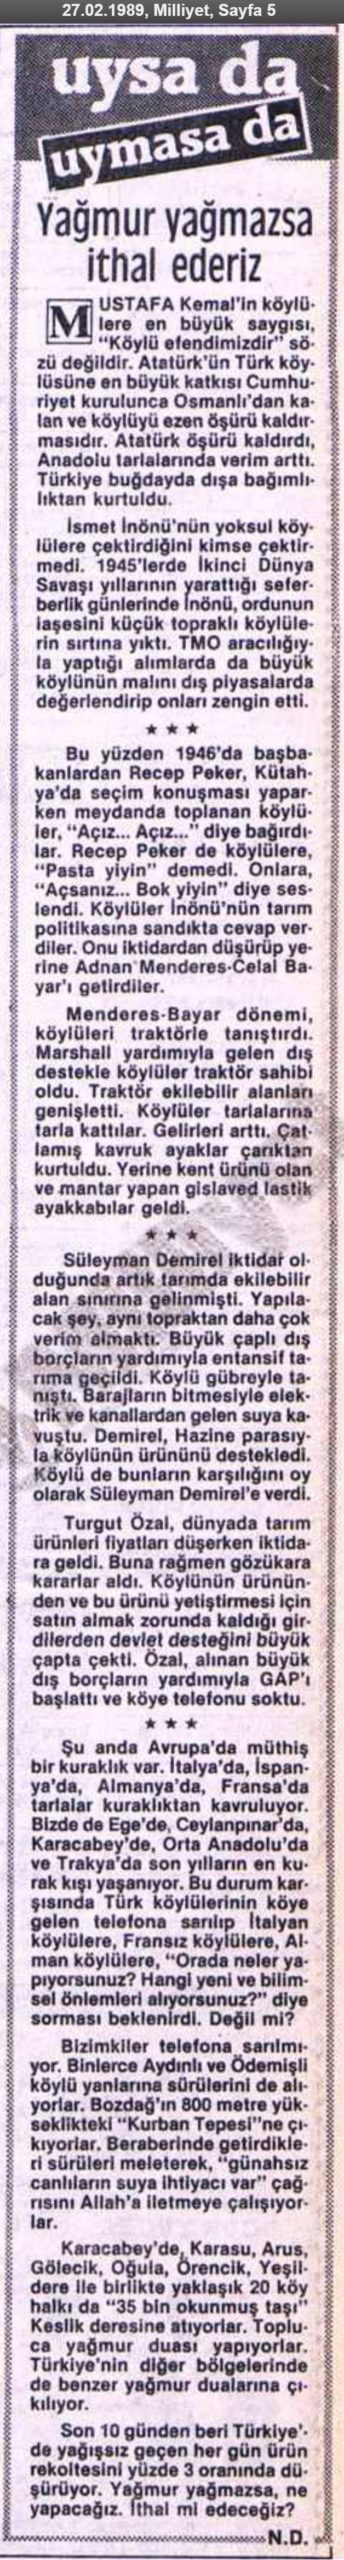 Necati Doğru'nun Milliyet Gazetesinde 27 Şubat 1989 tarihinde yayınlanan Recep Peker'in "ekmek yoksa b.k yiyin" dediğini öne sürdüğü köşe yazısı